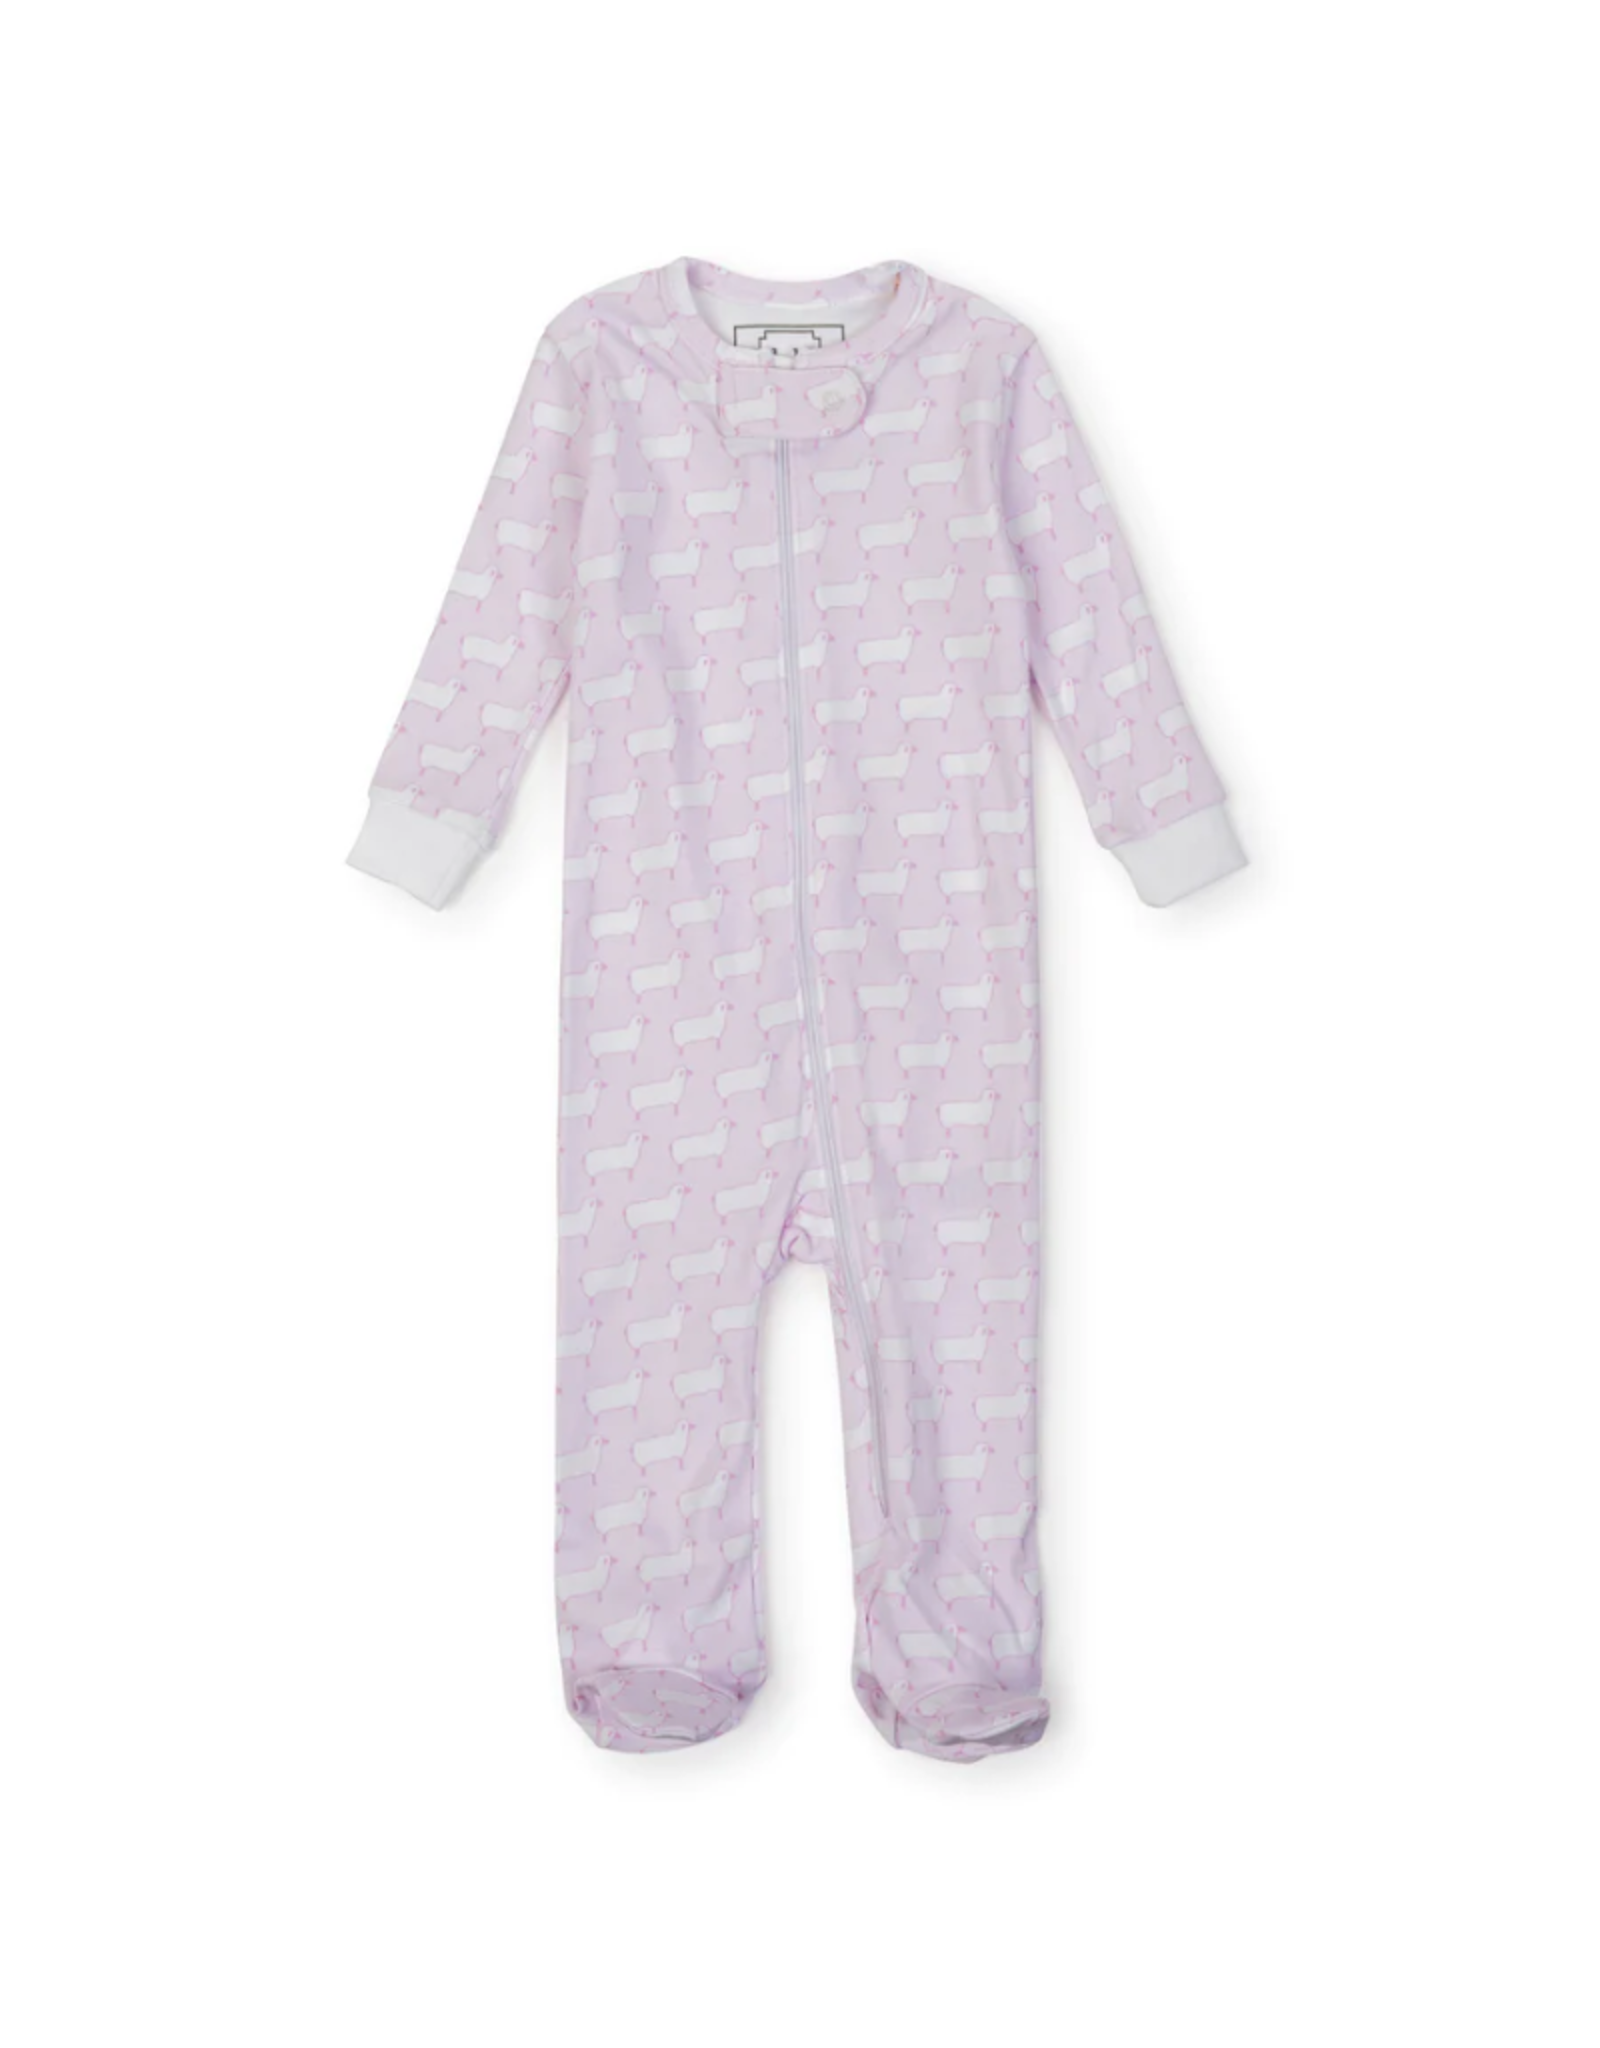 Lila + Hayes Parker Zip Pajama, Counting Sheep Pink